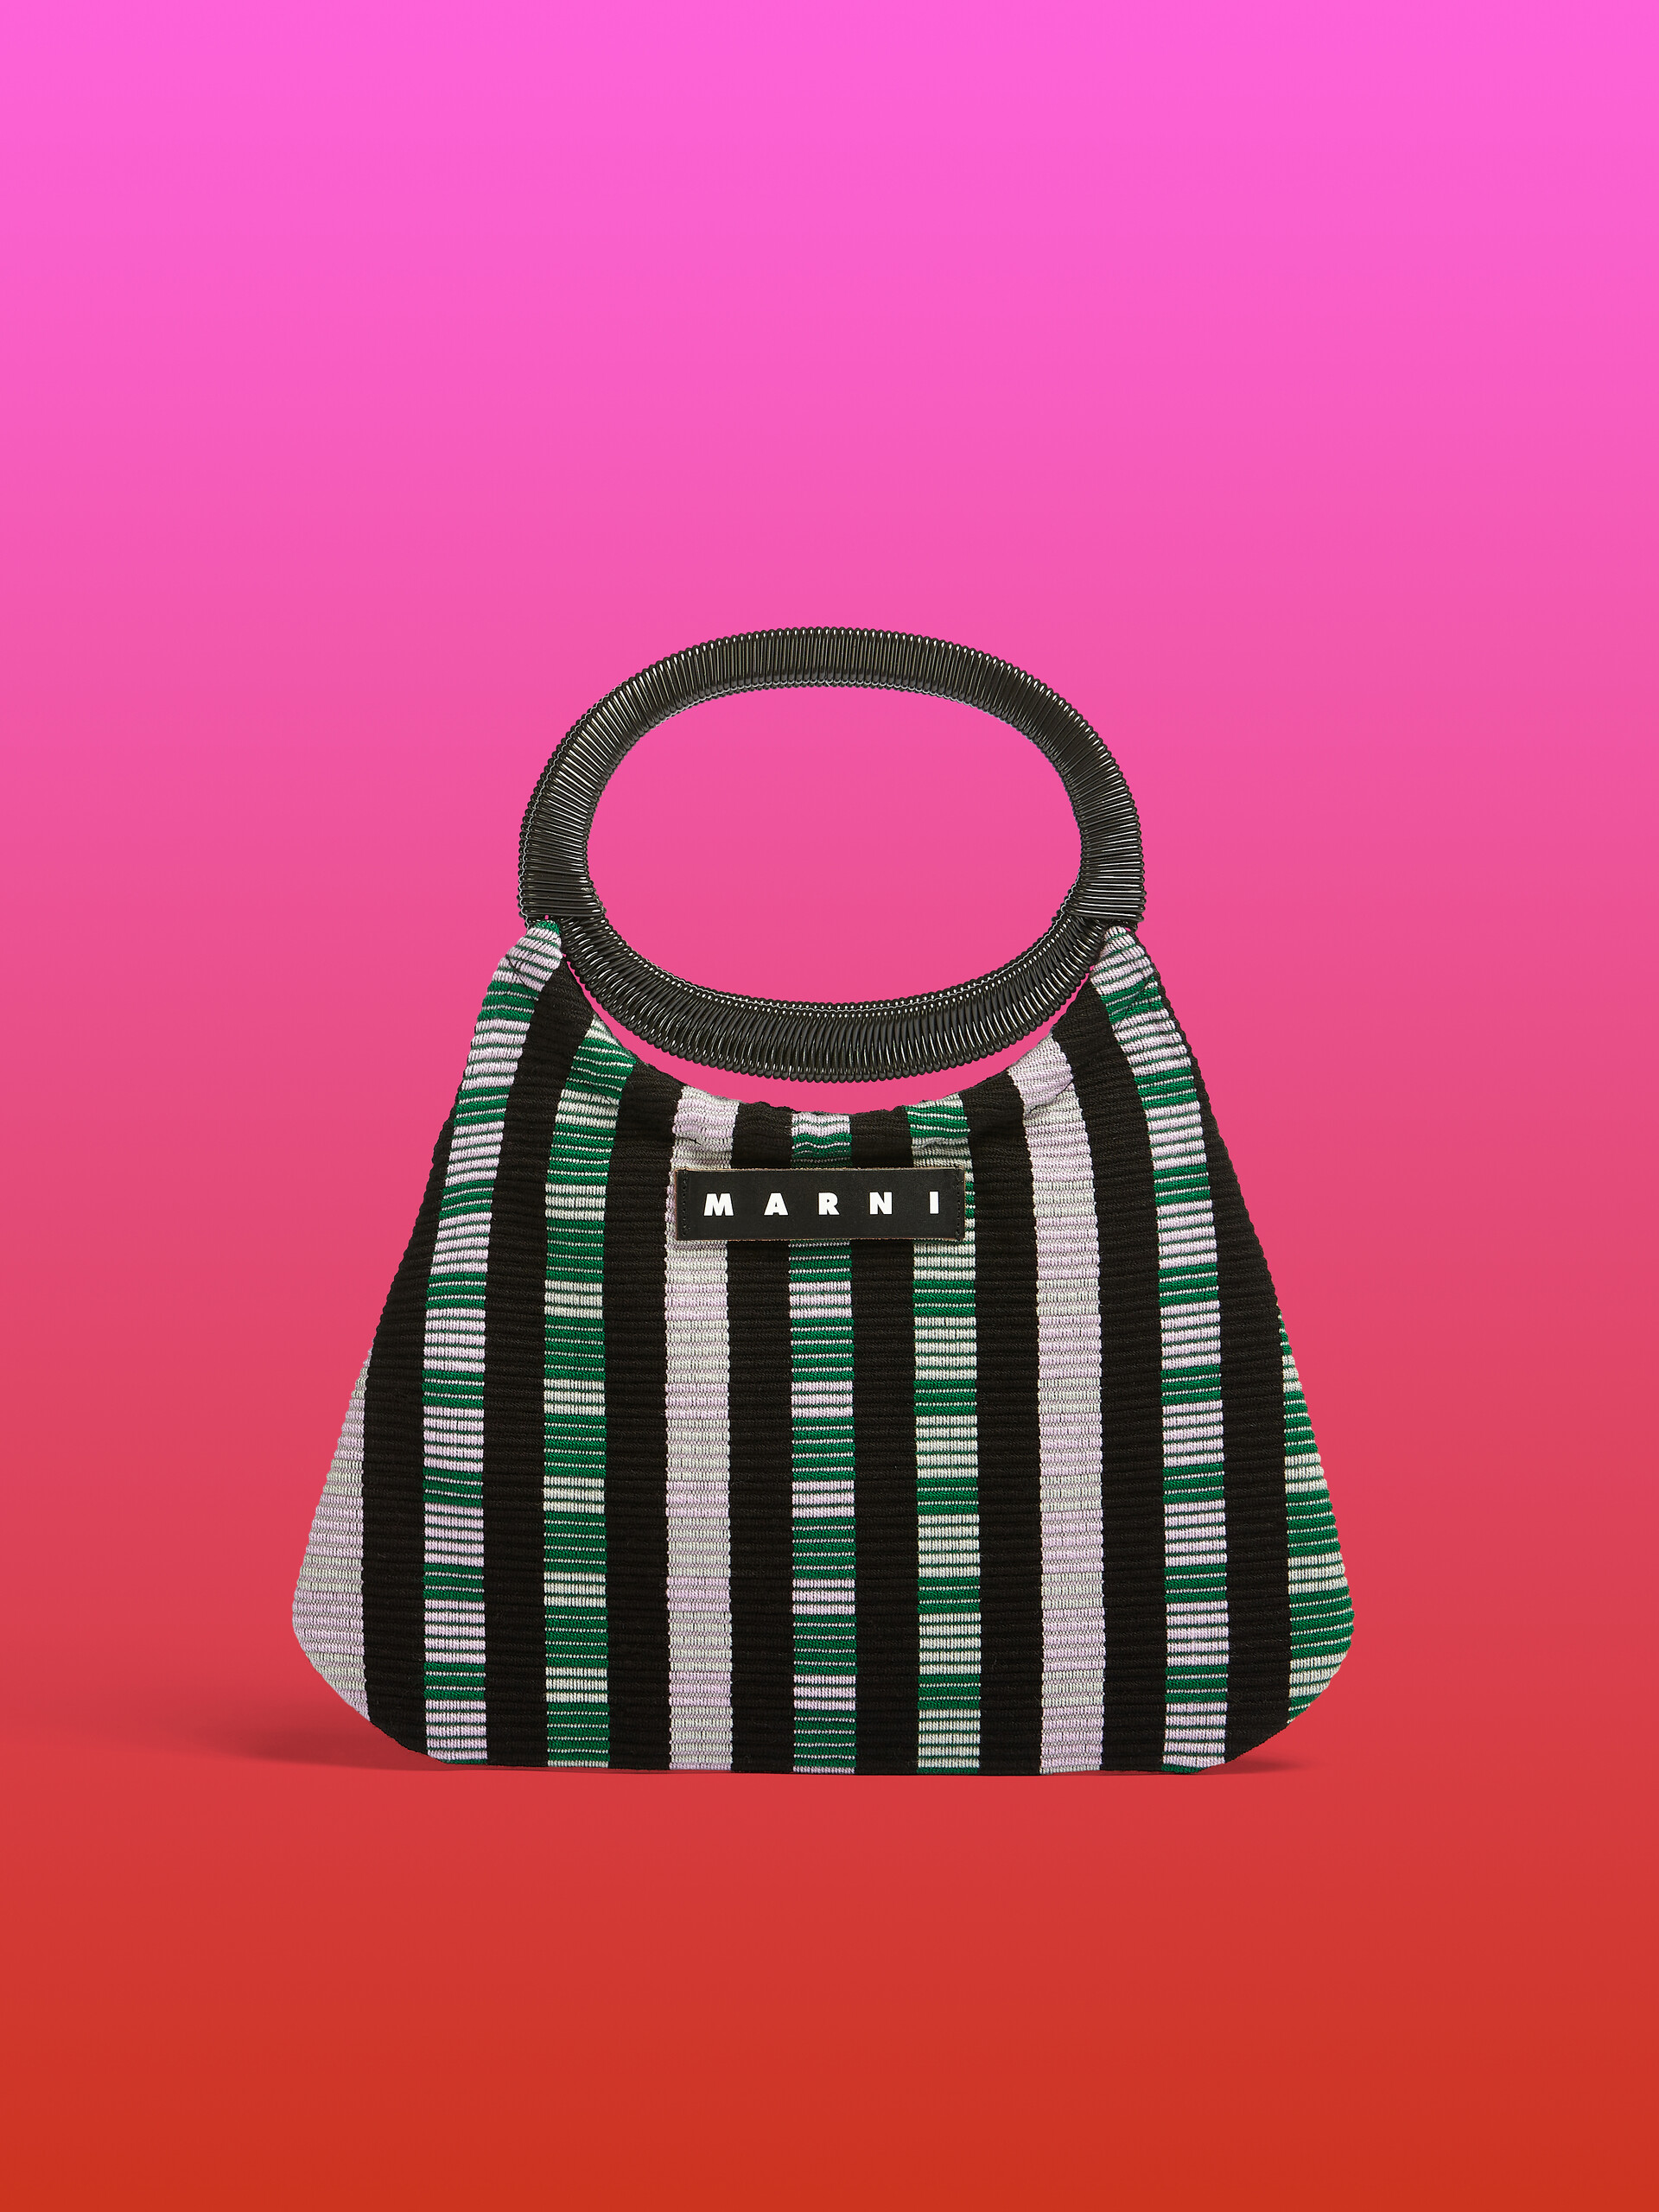 MARNI MARKET BOAT bag in multicolor lilac striped cotton - Furniture - Image 1